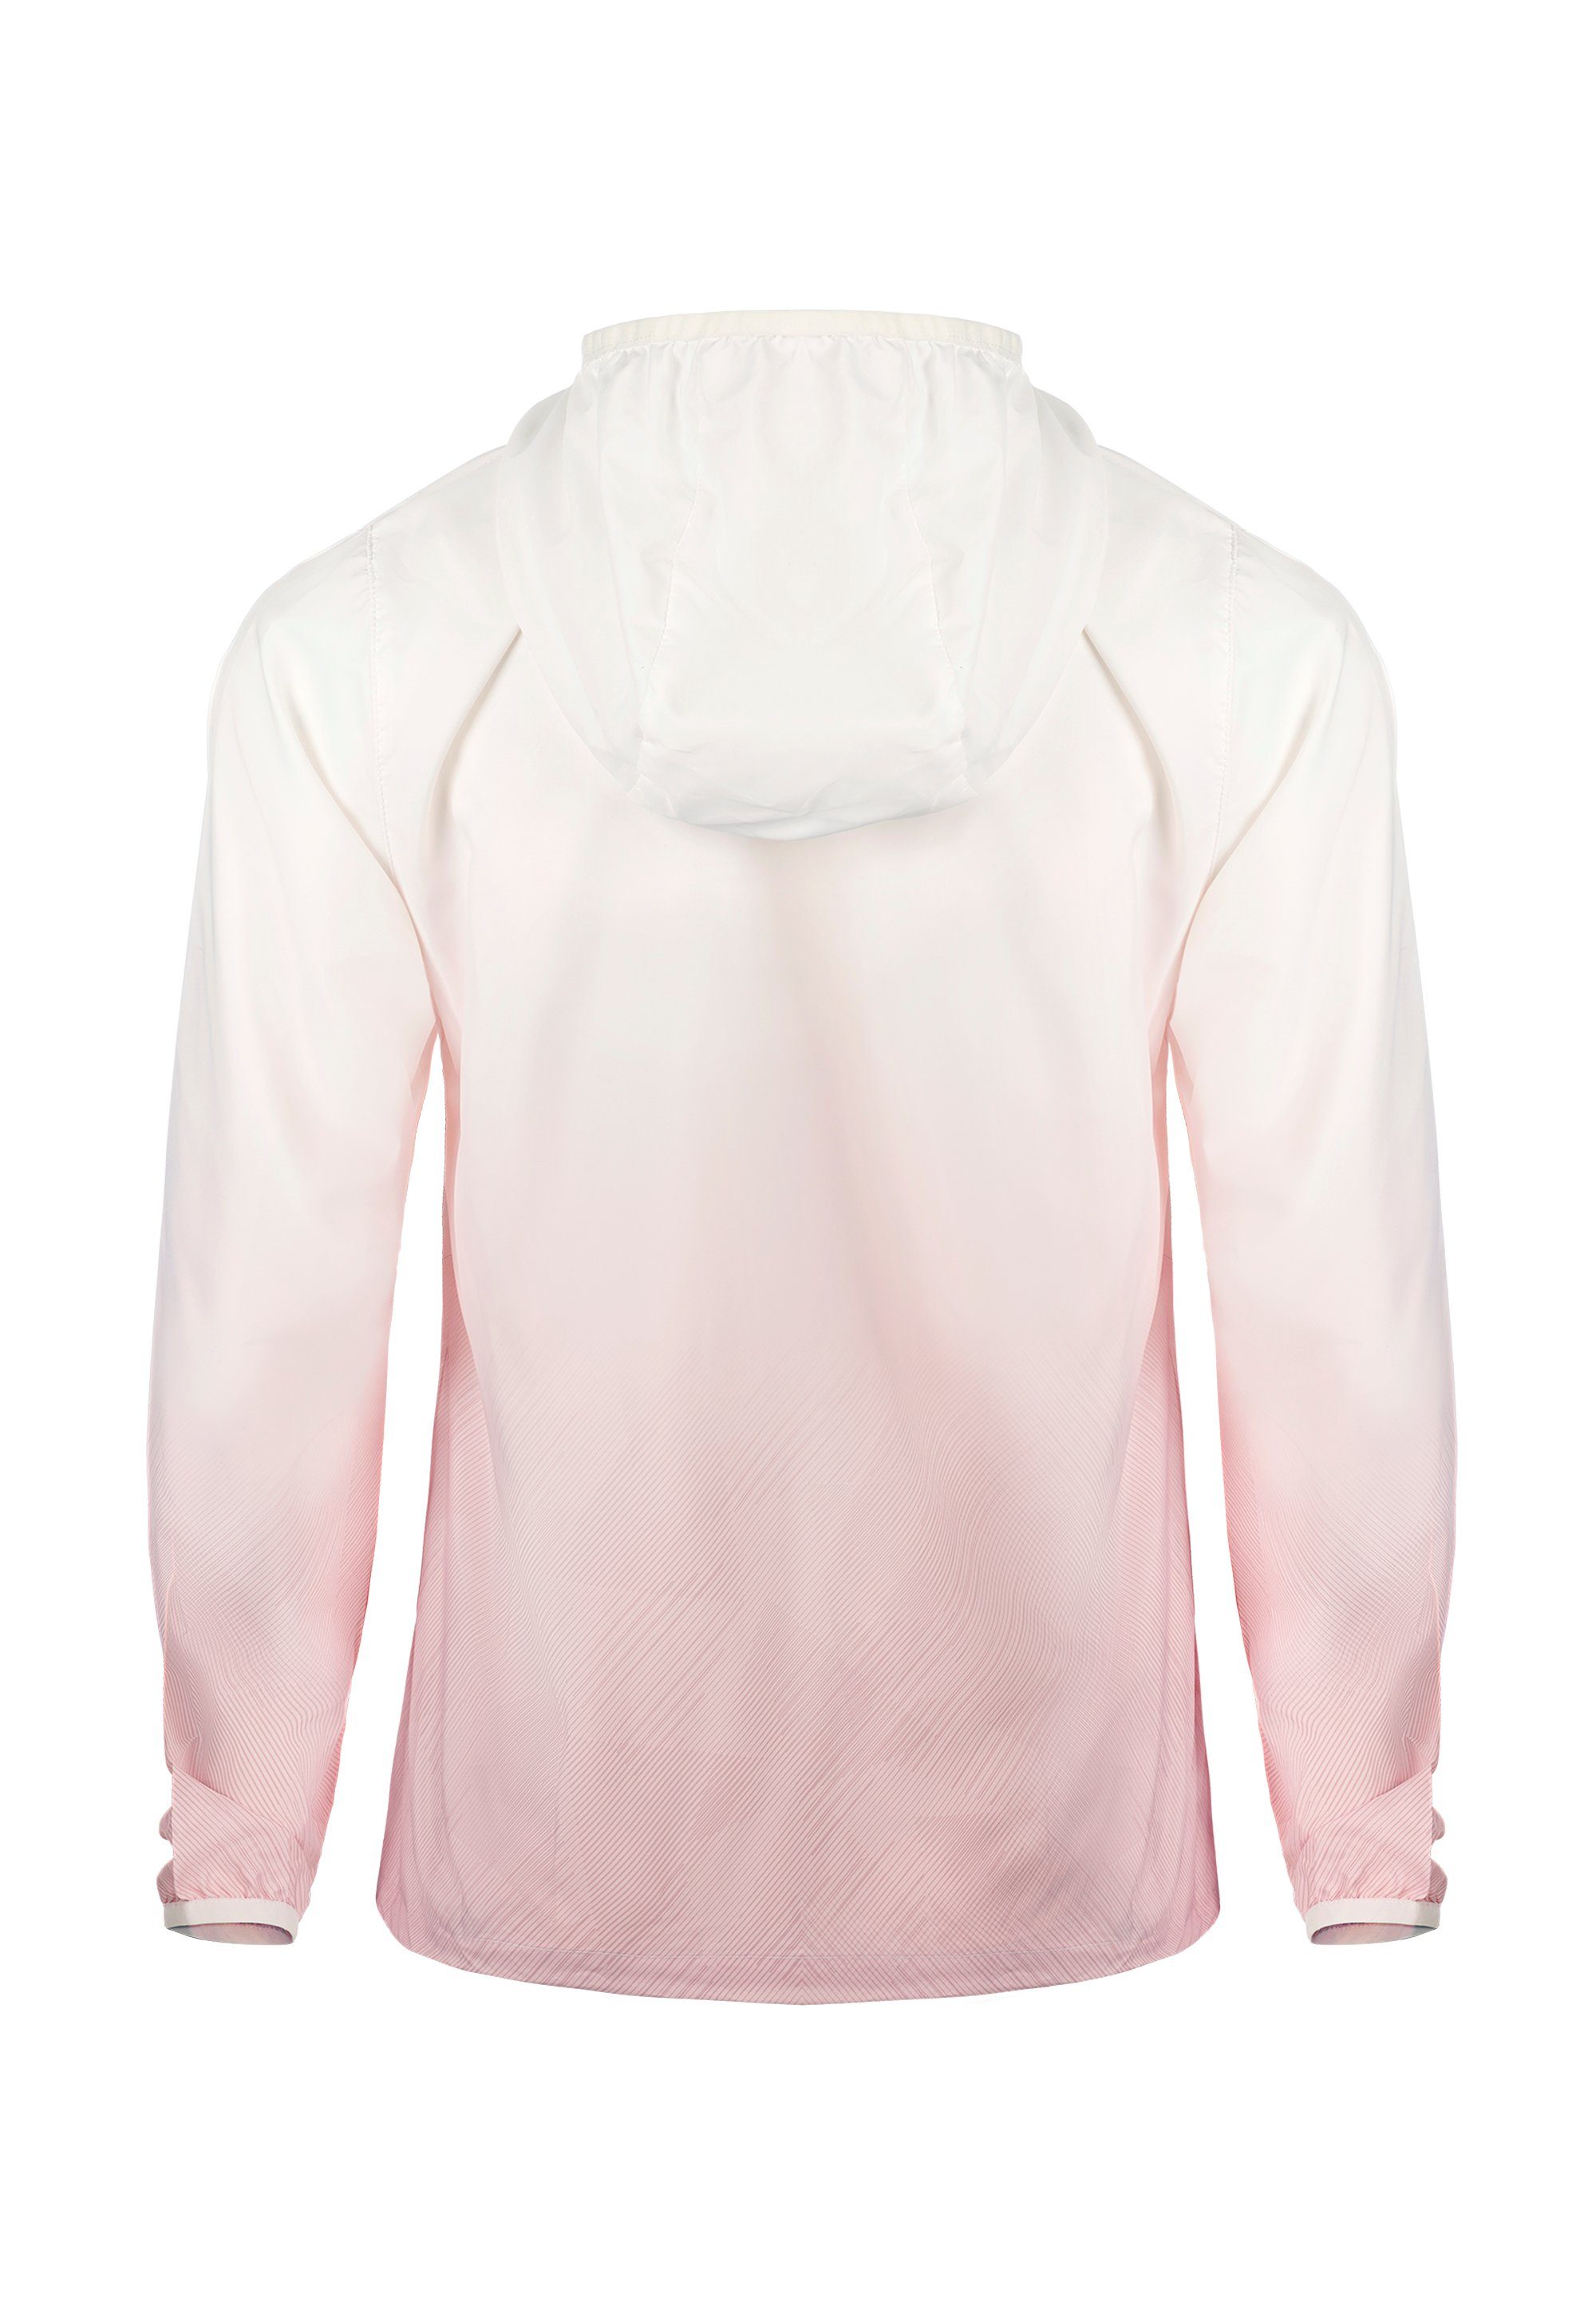 GIORDANO Outdoorjacke G mi pink-weiß 50+ Motion UV-Schutzfaktor